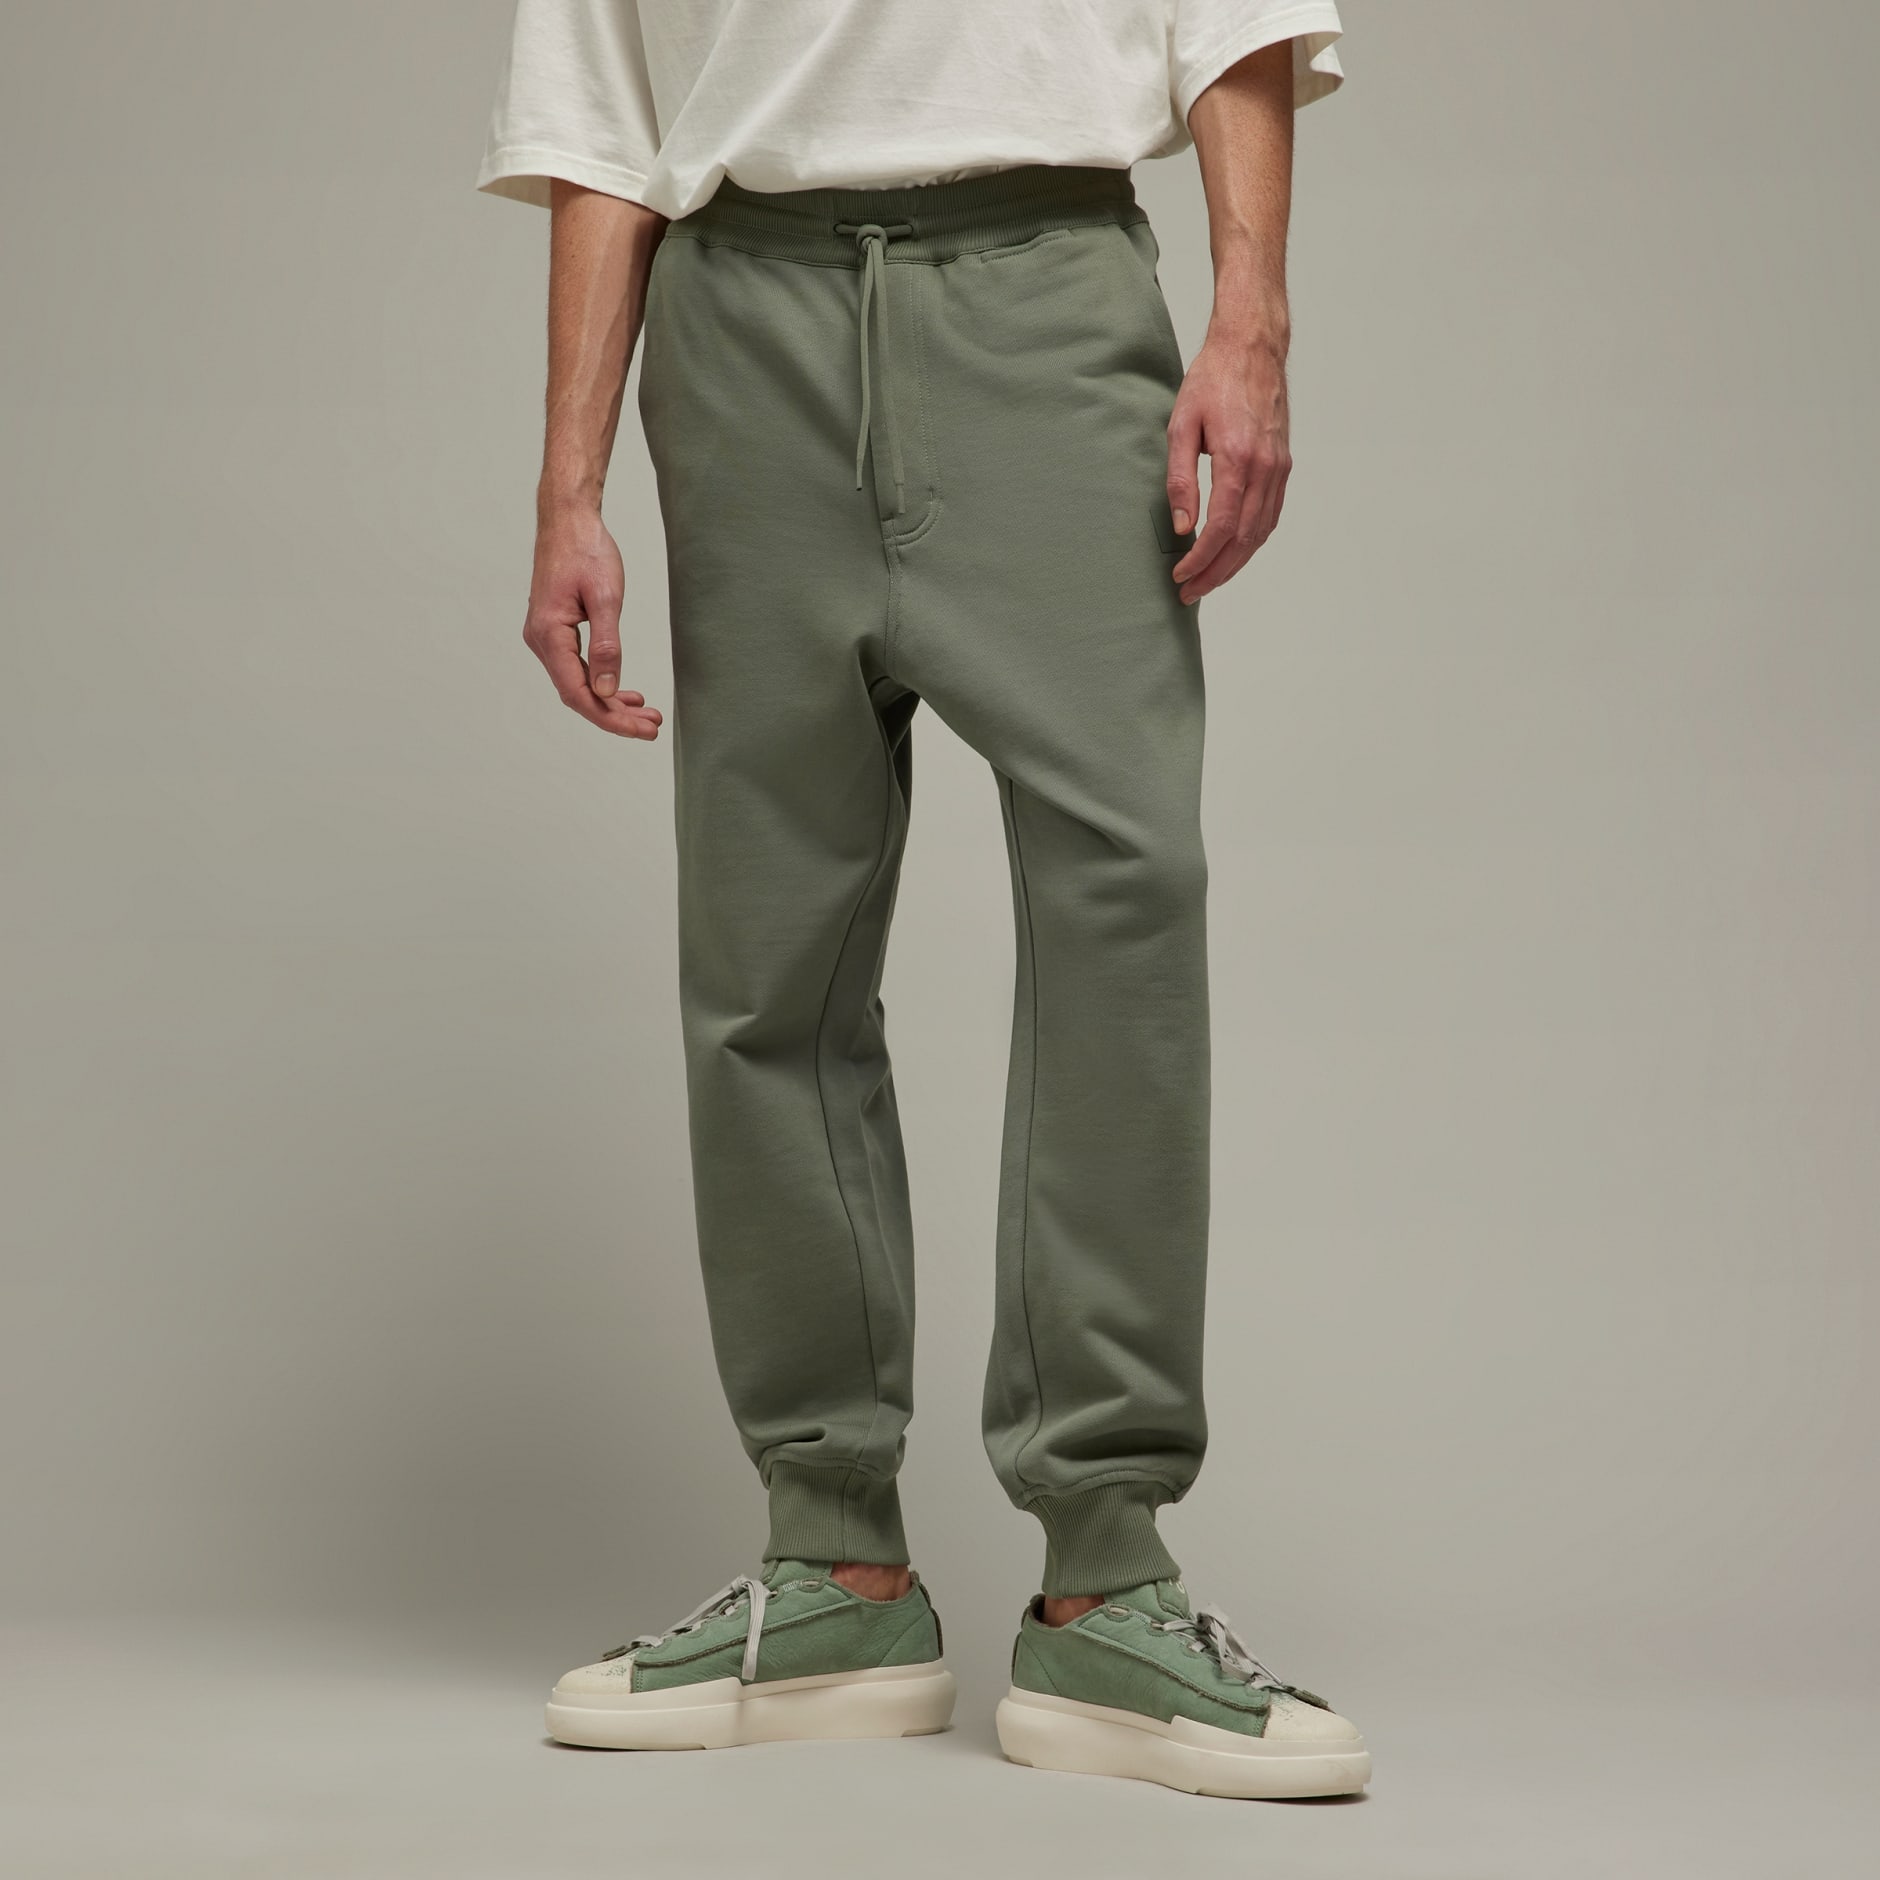 adidas Y-3 Organic Cotton Terry Cuffed Pants - Green | adidas UAE